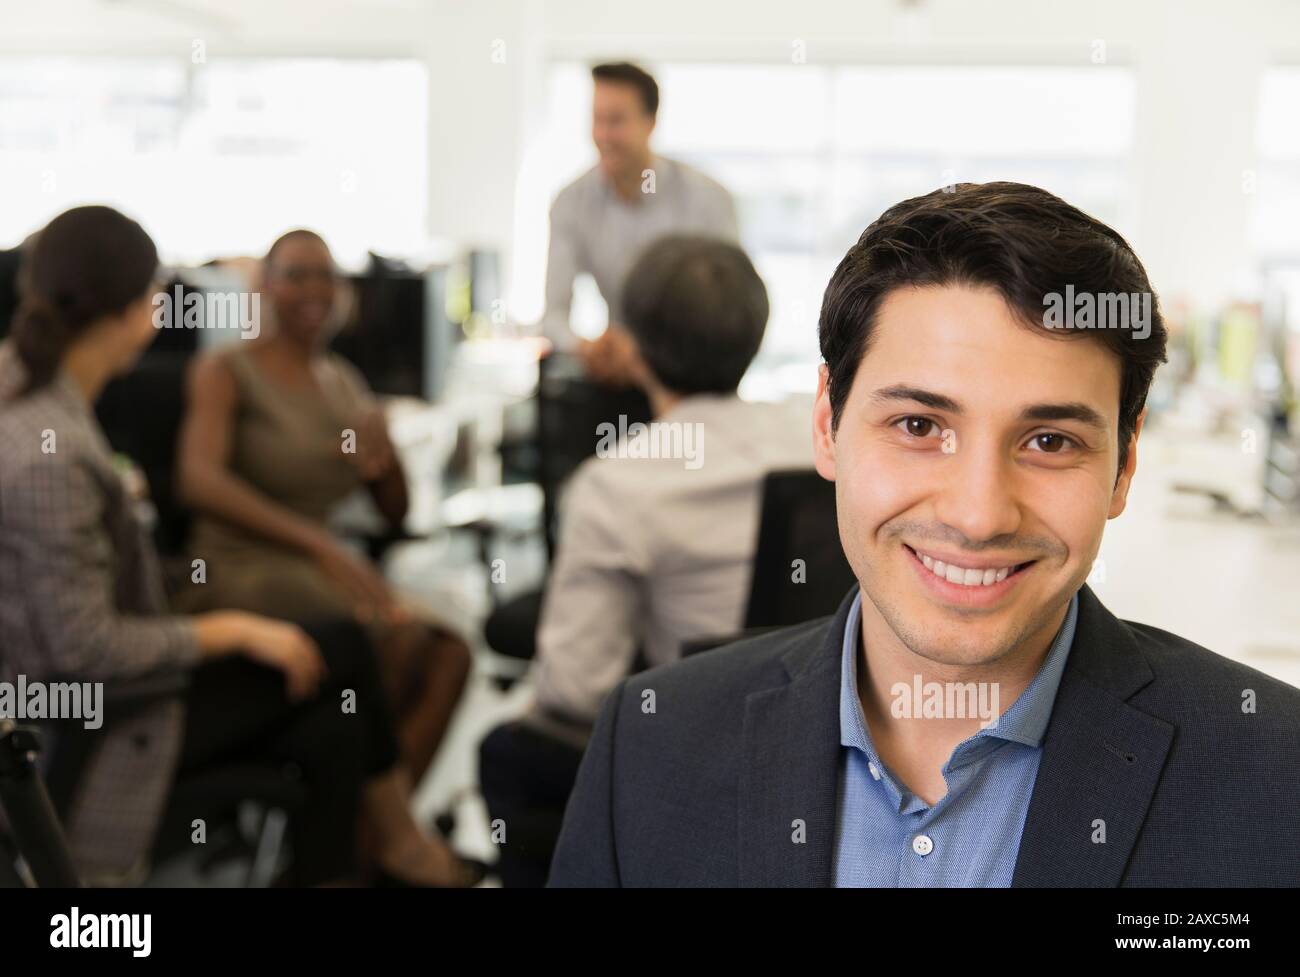 Confident businessman in office Portrait Banque D'Images